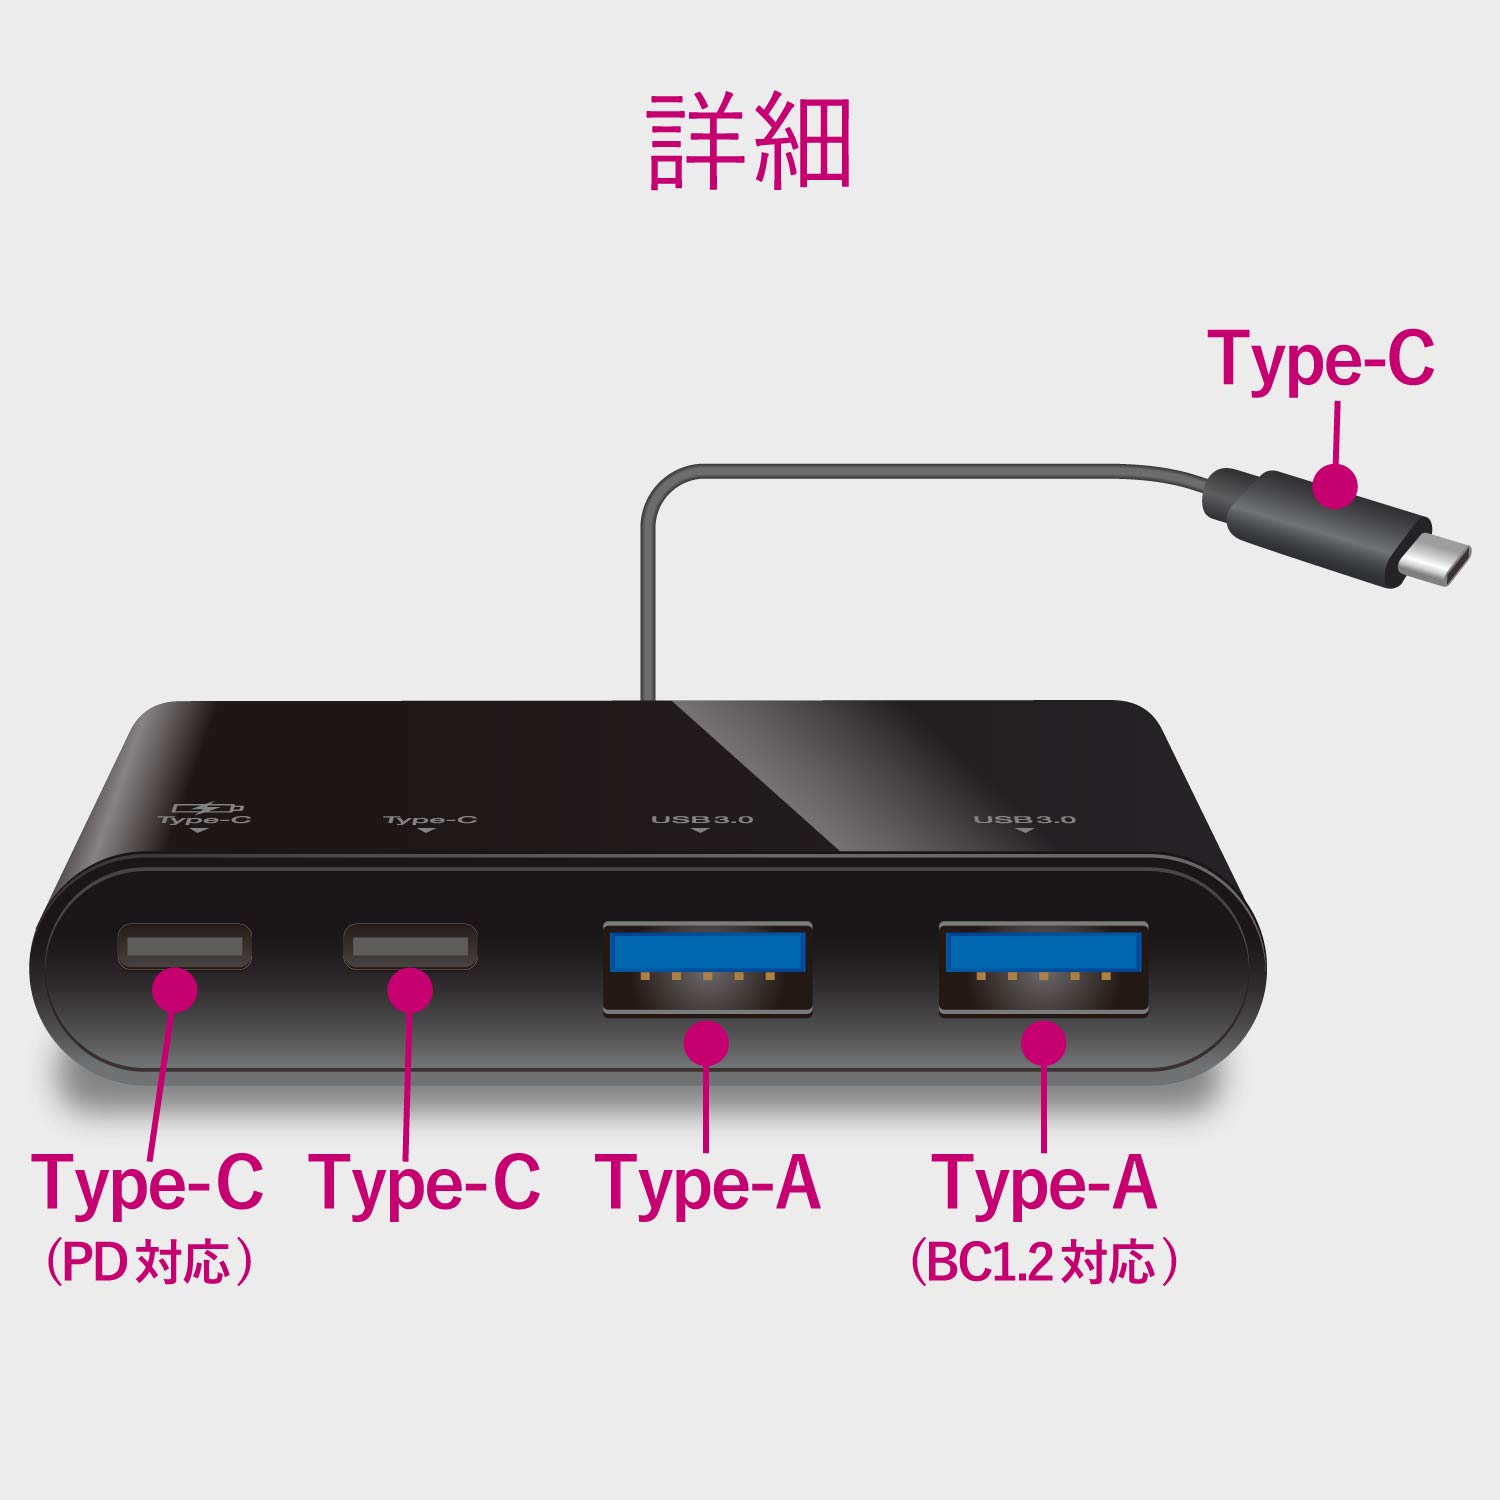 ELECOM USB Type-Cコネクタ搭載USBハブ(USB PD対応) U3HC-A424P10BK  [ブラック]｜パソコン・スマートフォン・デジタル機器販売のPC DEPOT(ピーシーデポ)WEBSHOP